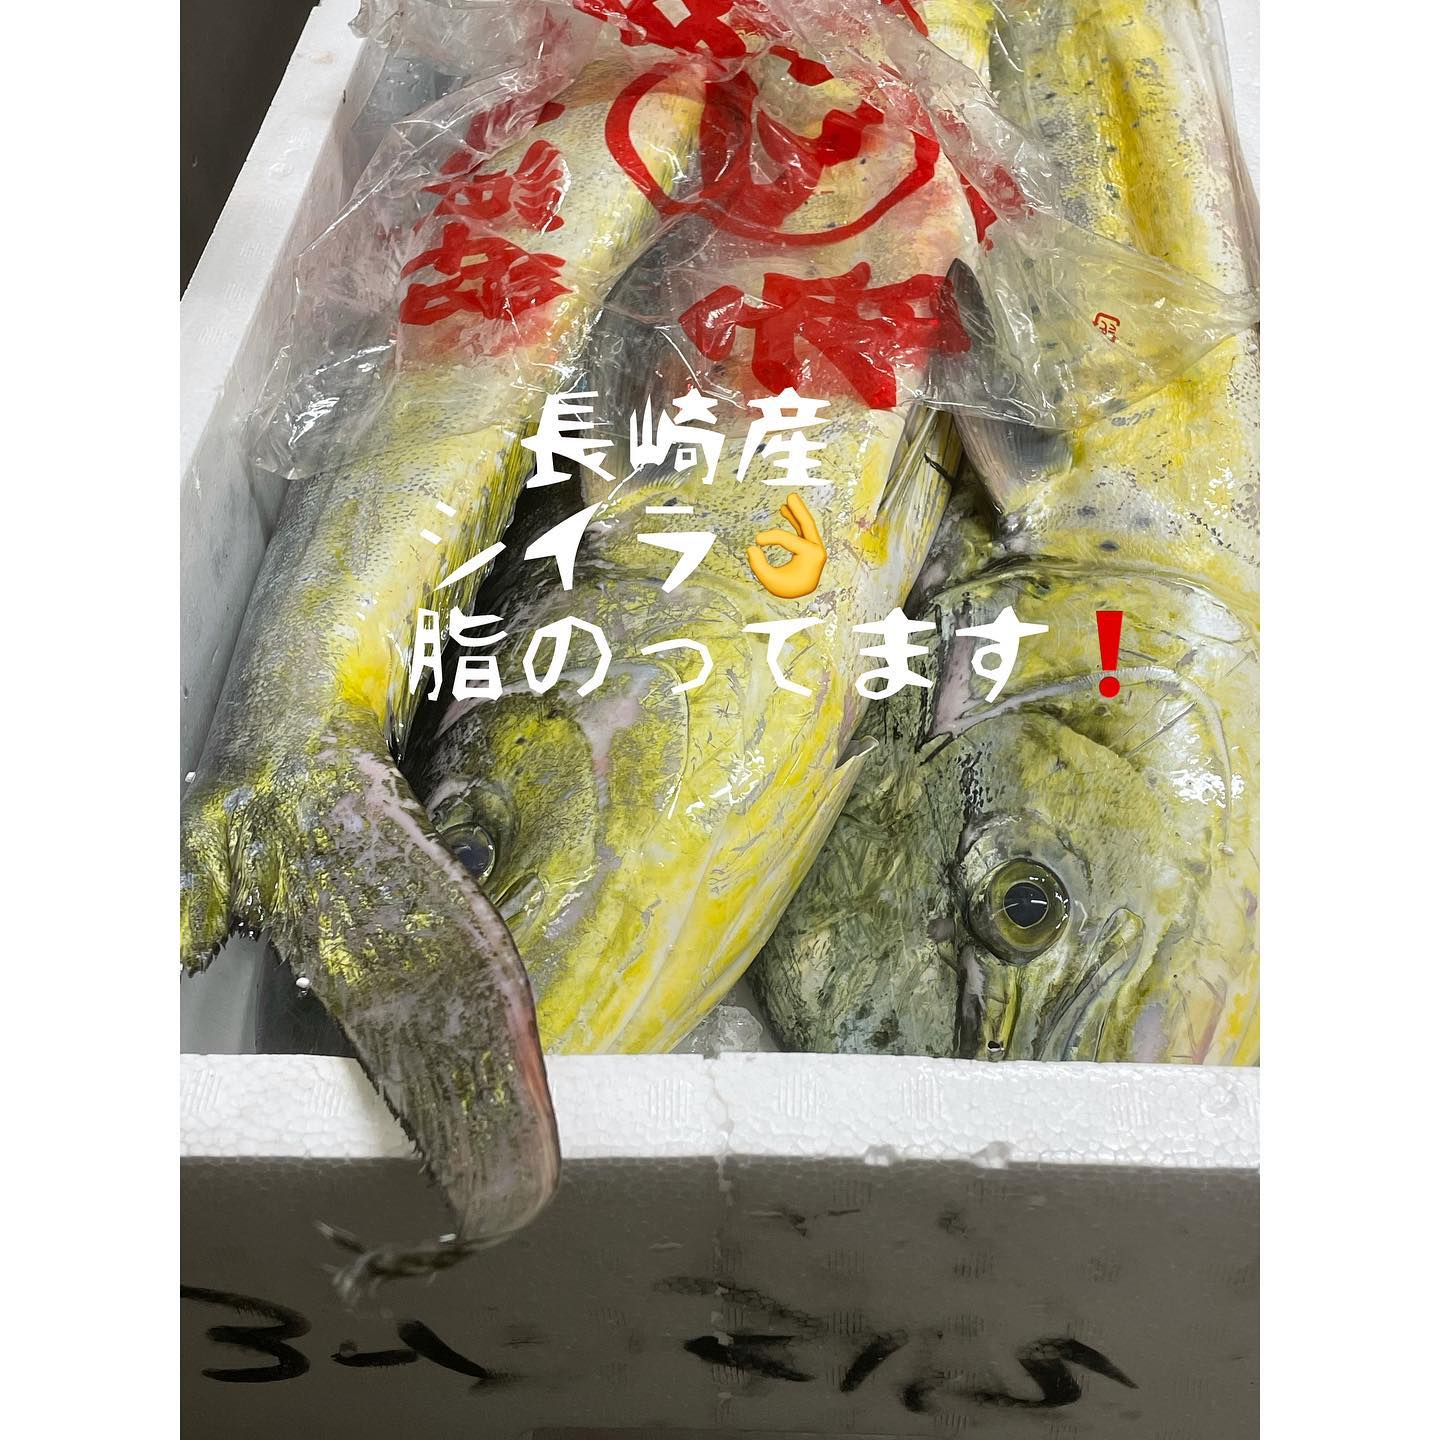 おはようございますさかな屋えうらです??本日も､よろしくお願いいたします‍♂️#熊本市北区 #高平 #さかな屋えうら ??#本日 #晴天 #せんぽうし牡蠣 #うまし #シイラ #オリーブぶり #にぎり寿司 #やりいか #美味しいお魚 ??#色々 #あります #本日もよろしくお願いします ‍♂️